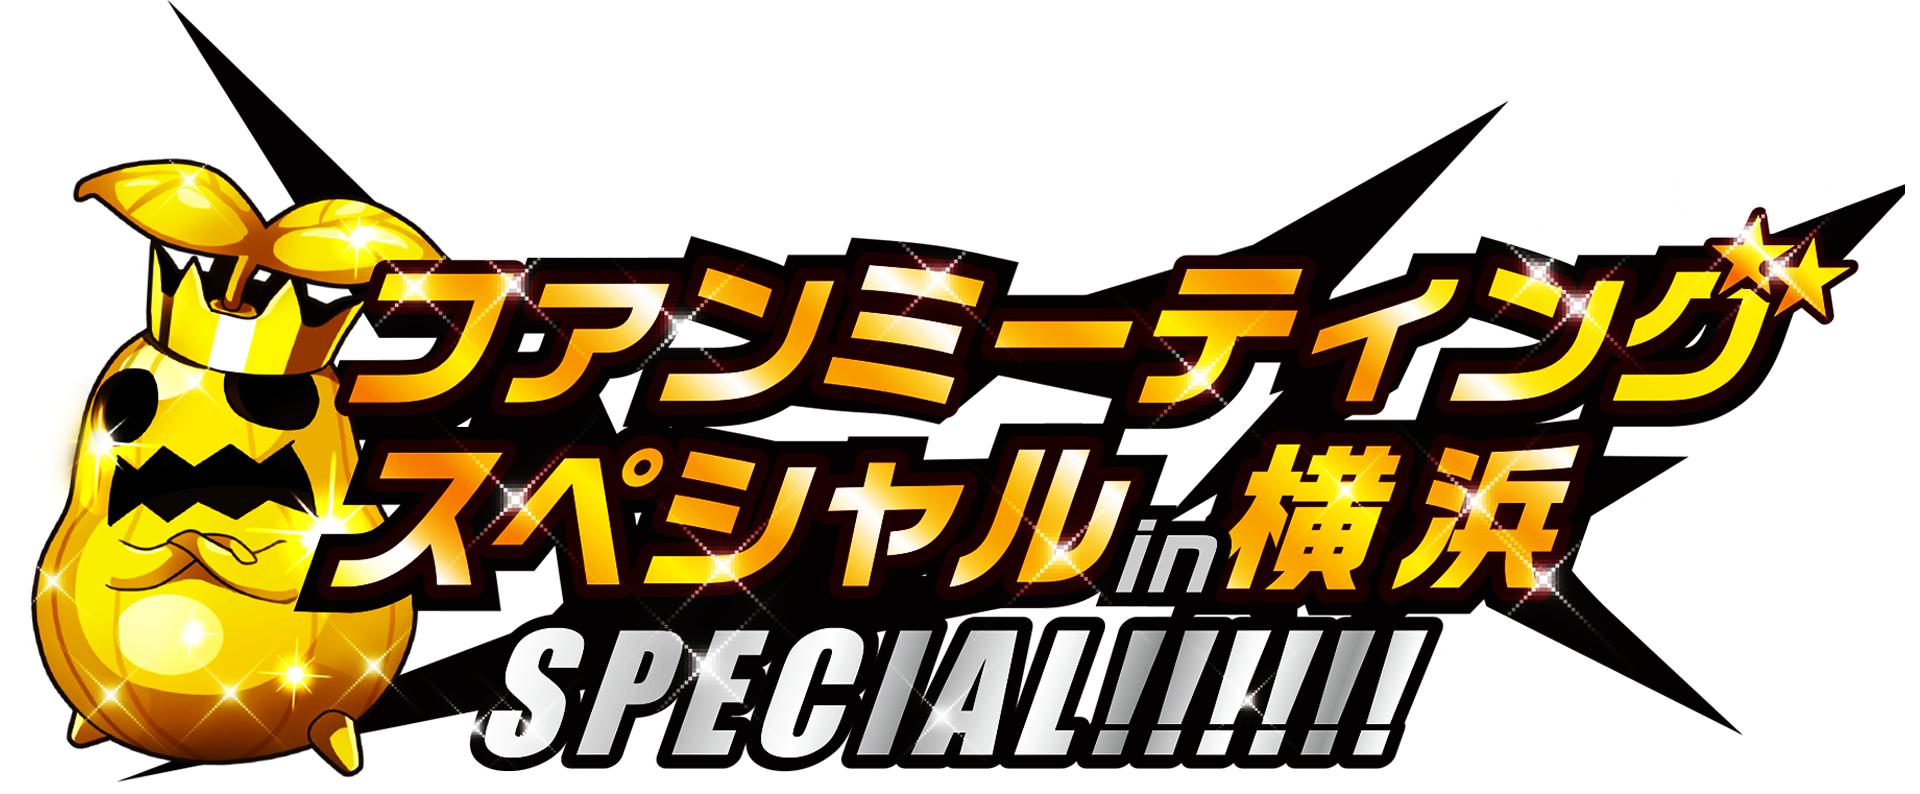 【ログレス】超特大ファンミーティングを横浜で開催! 来場プレゼントやイベント内容をチェック